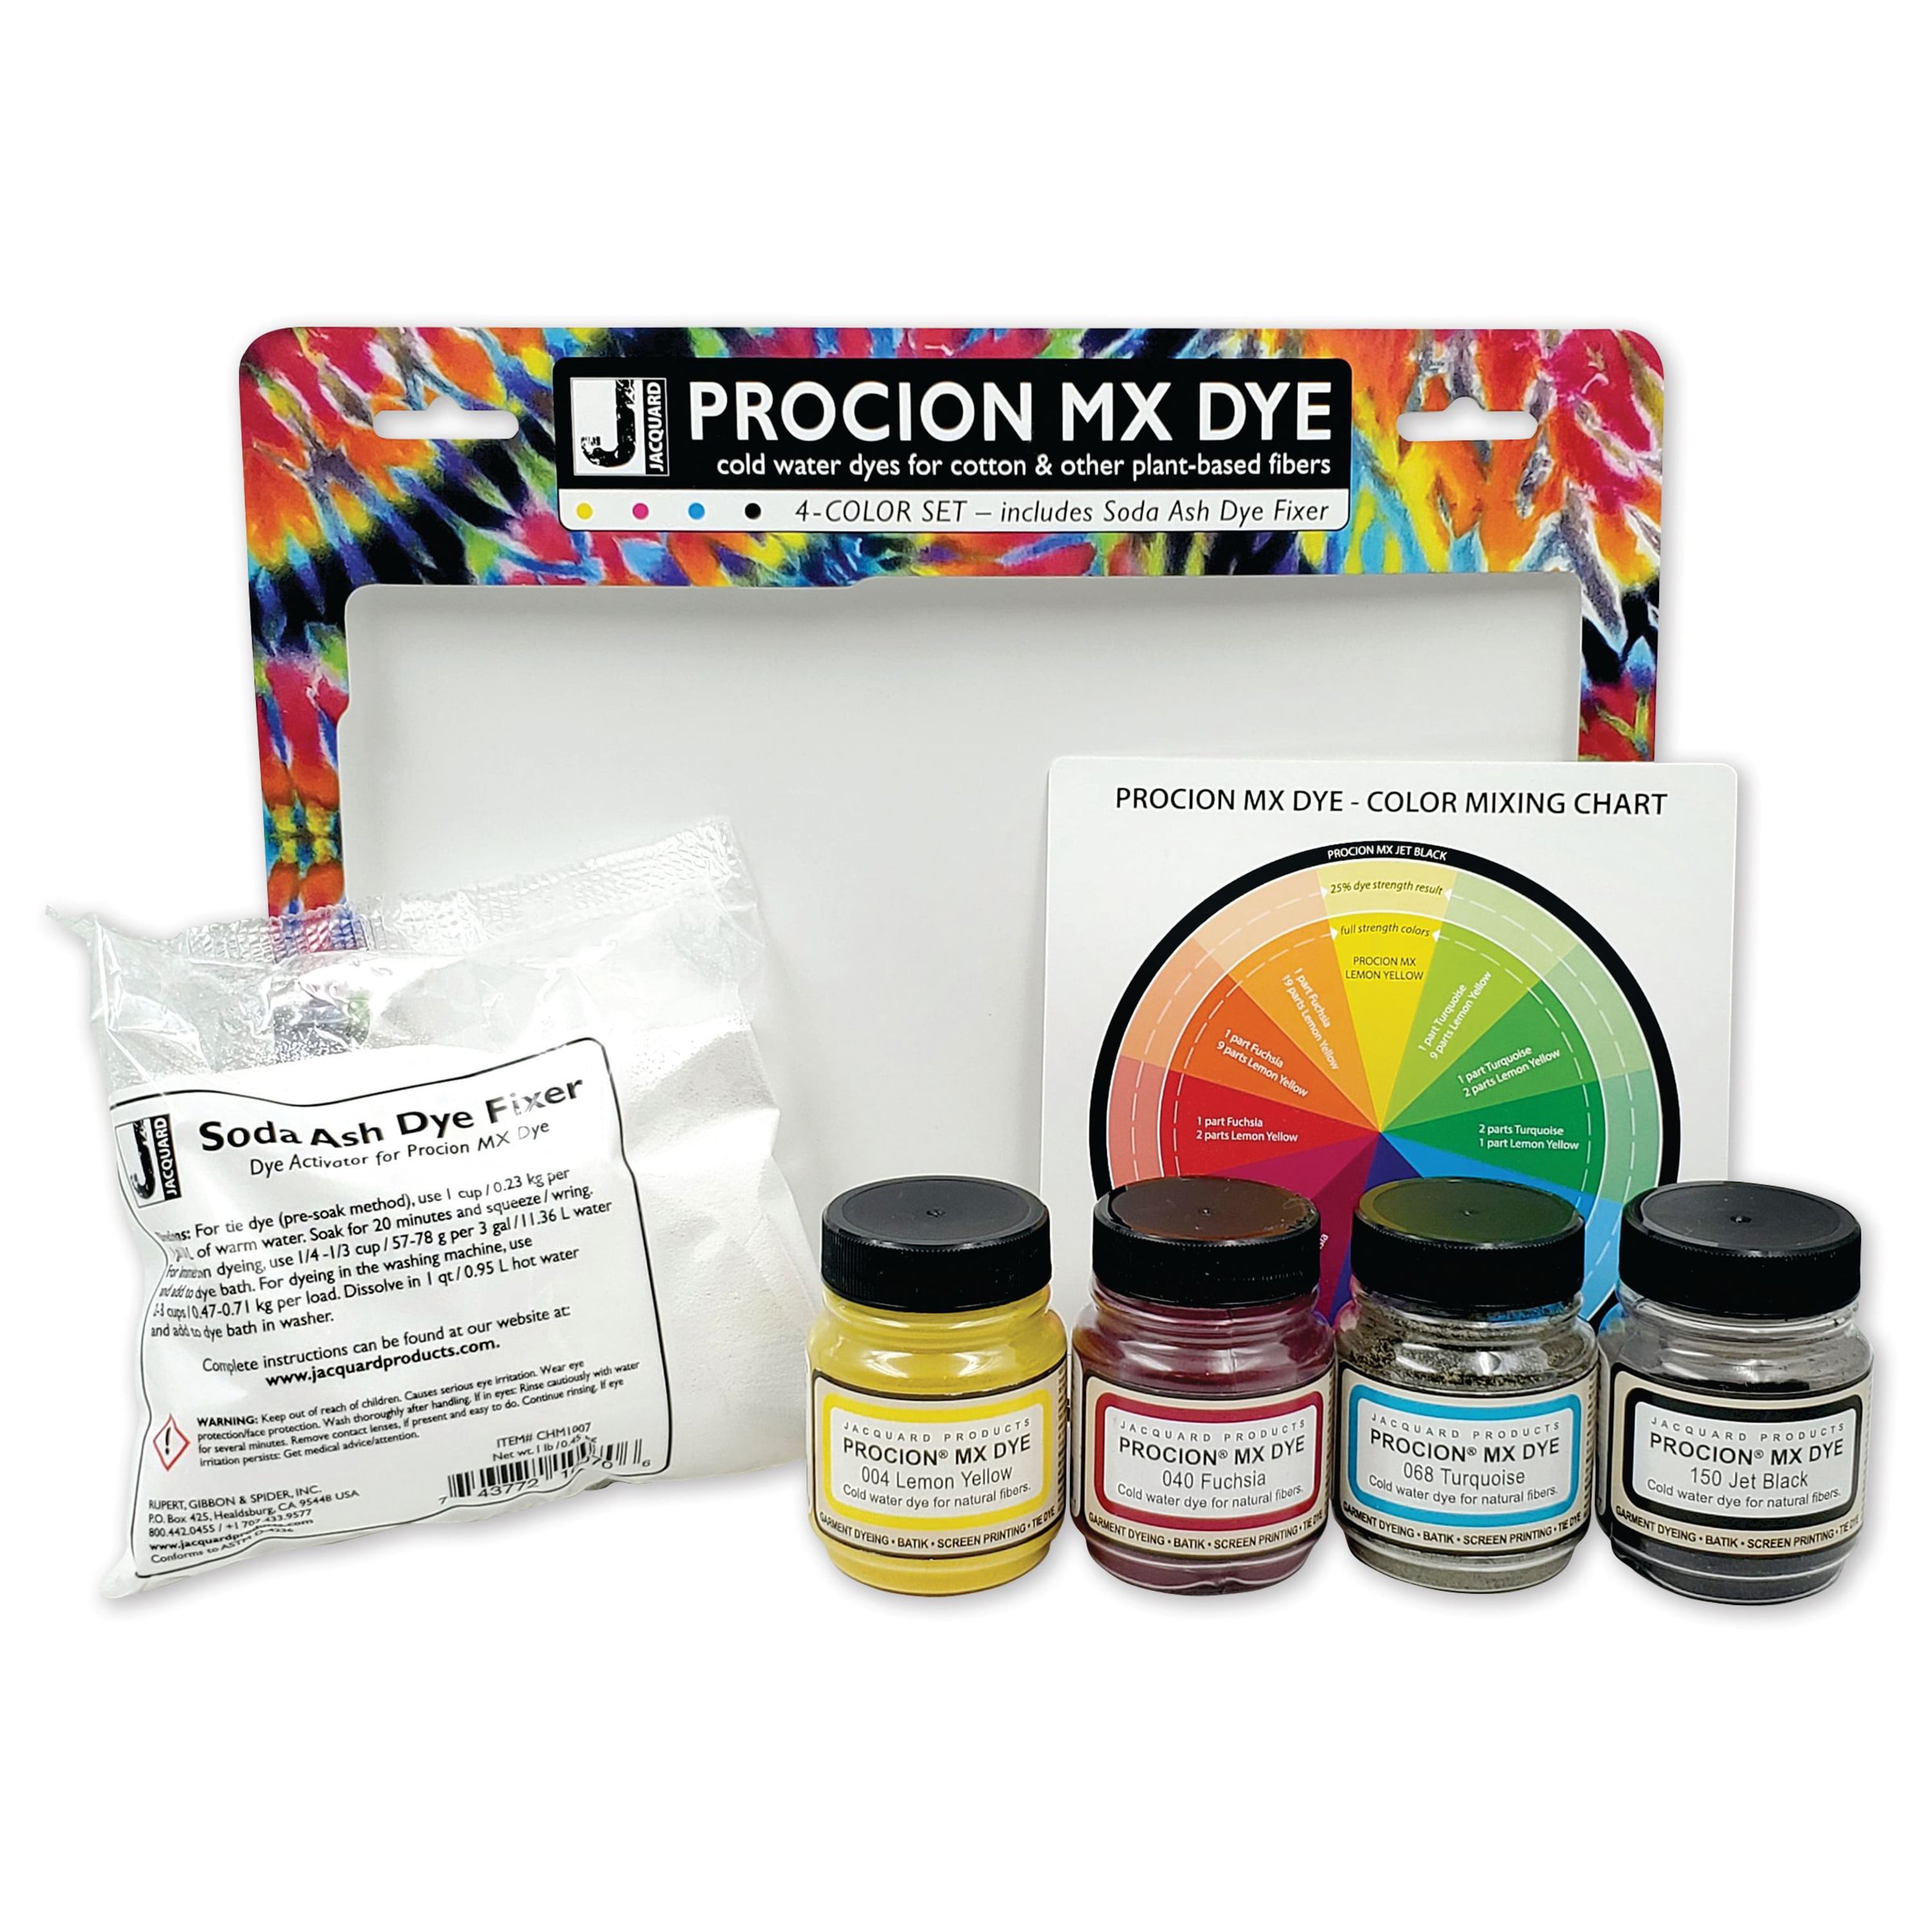 Procion MX Dye Cobalt Blue 240ml by Jacquard. Best for sale online